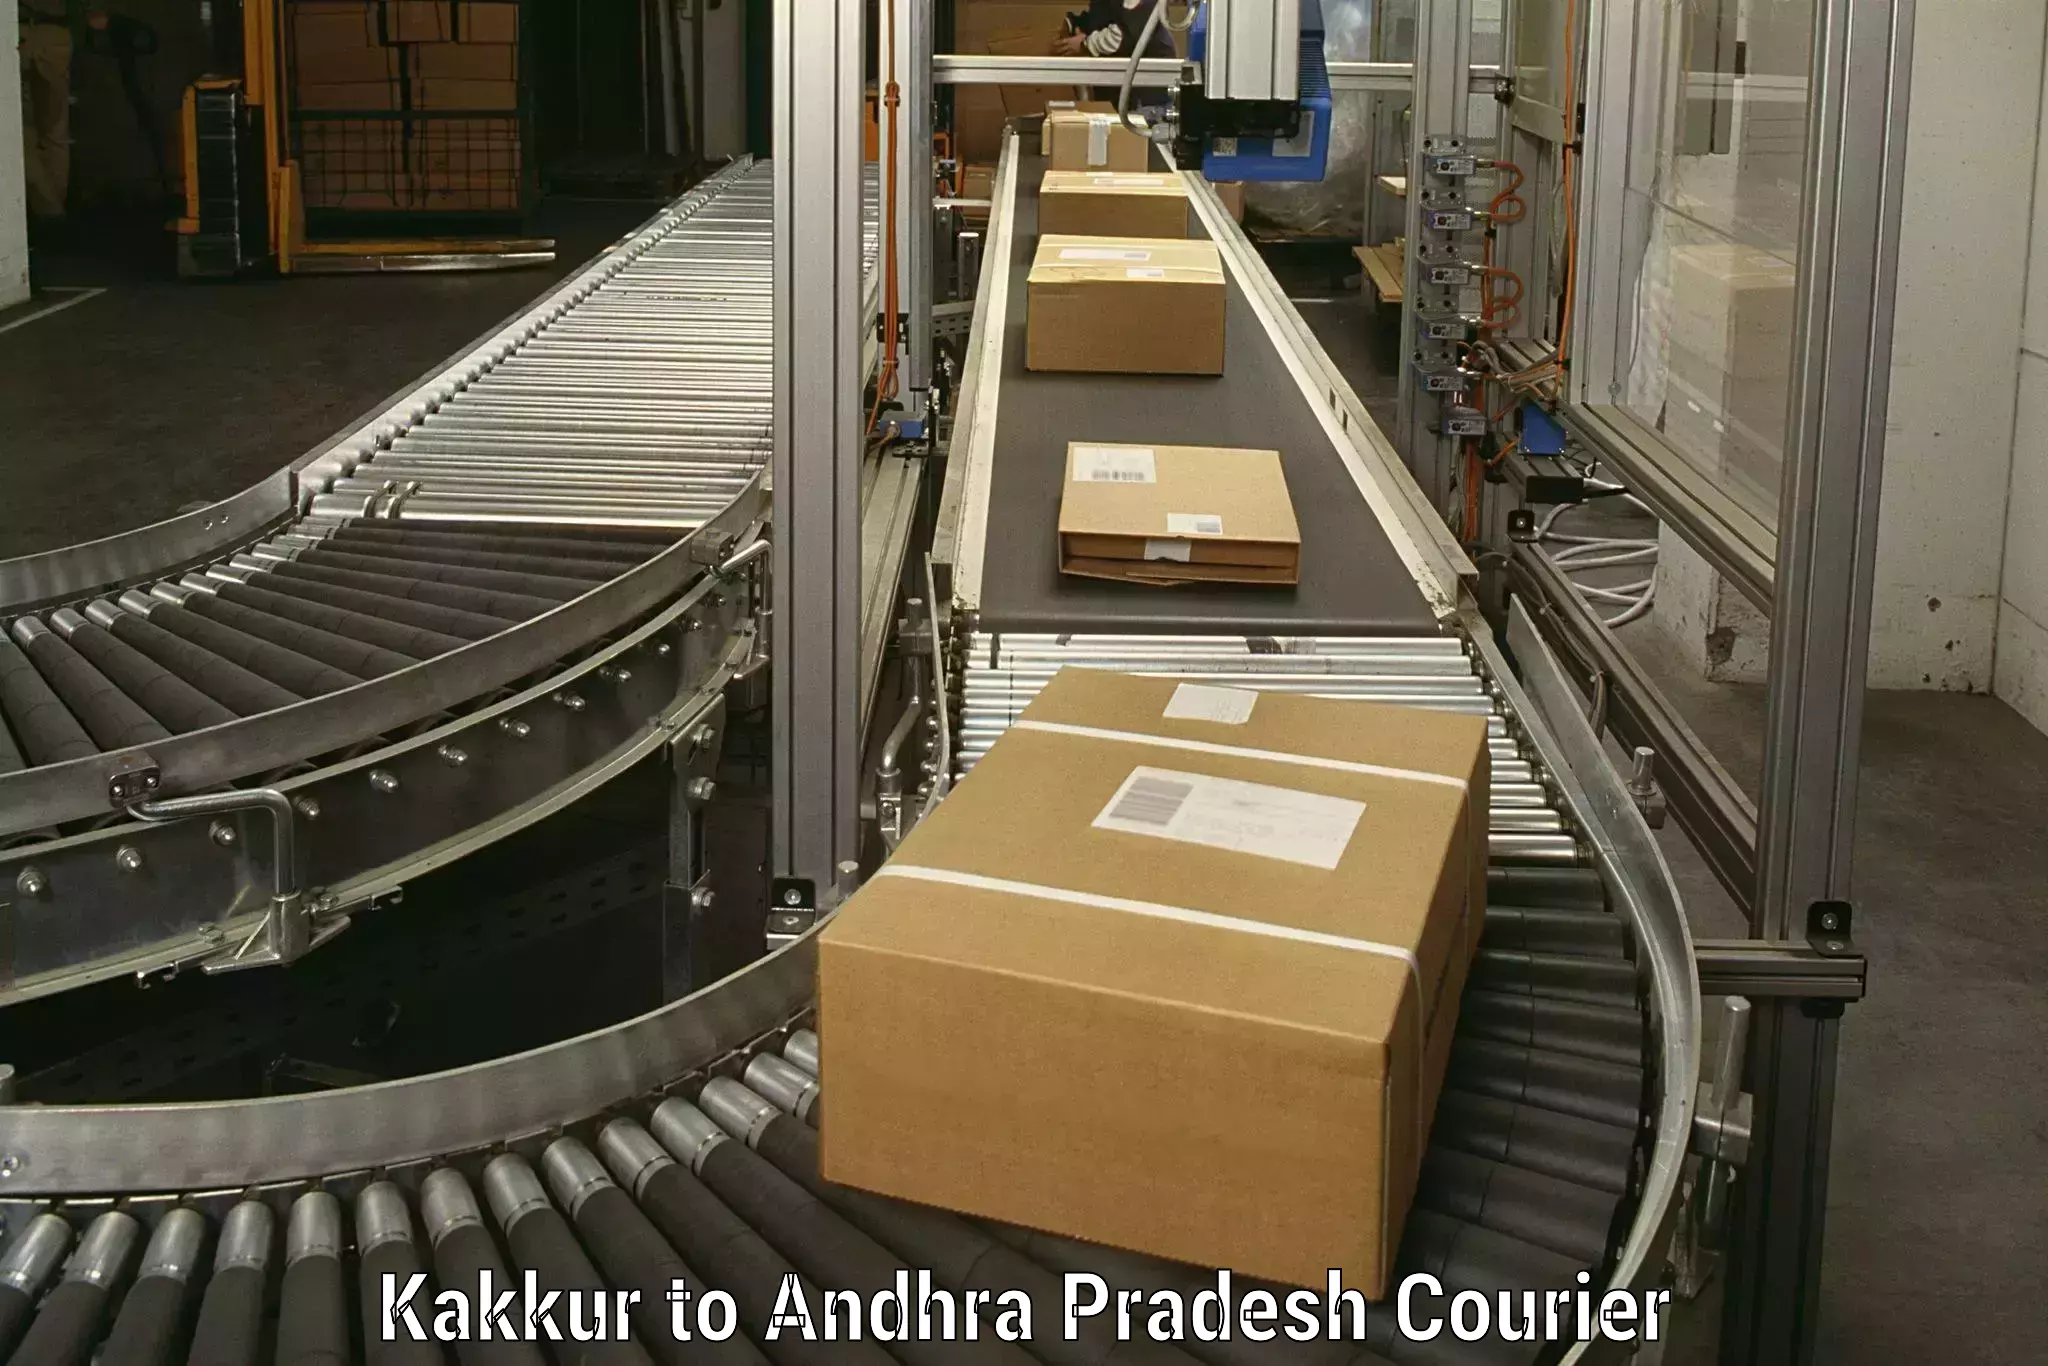 Customized relocation services Kakkur to Kakinada